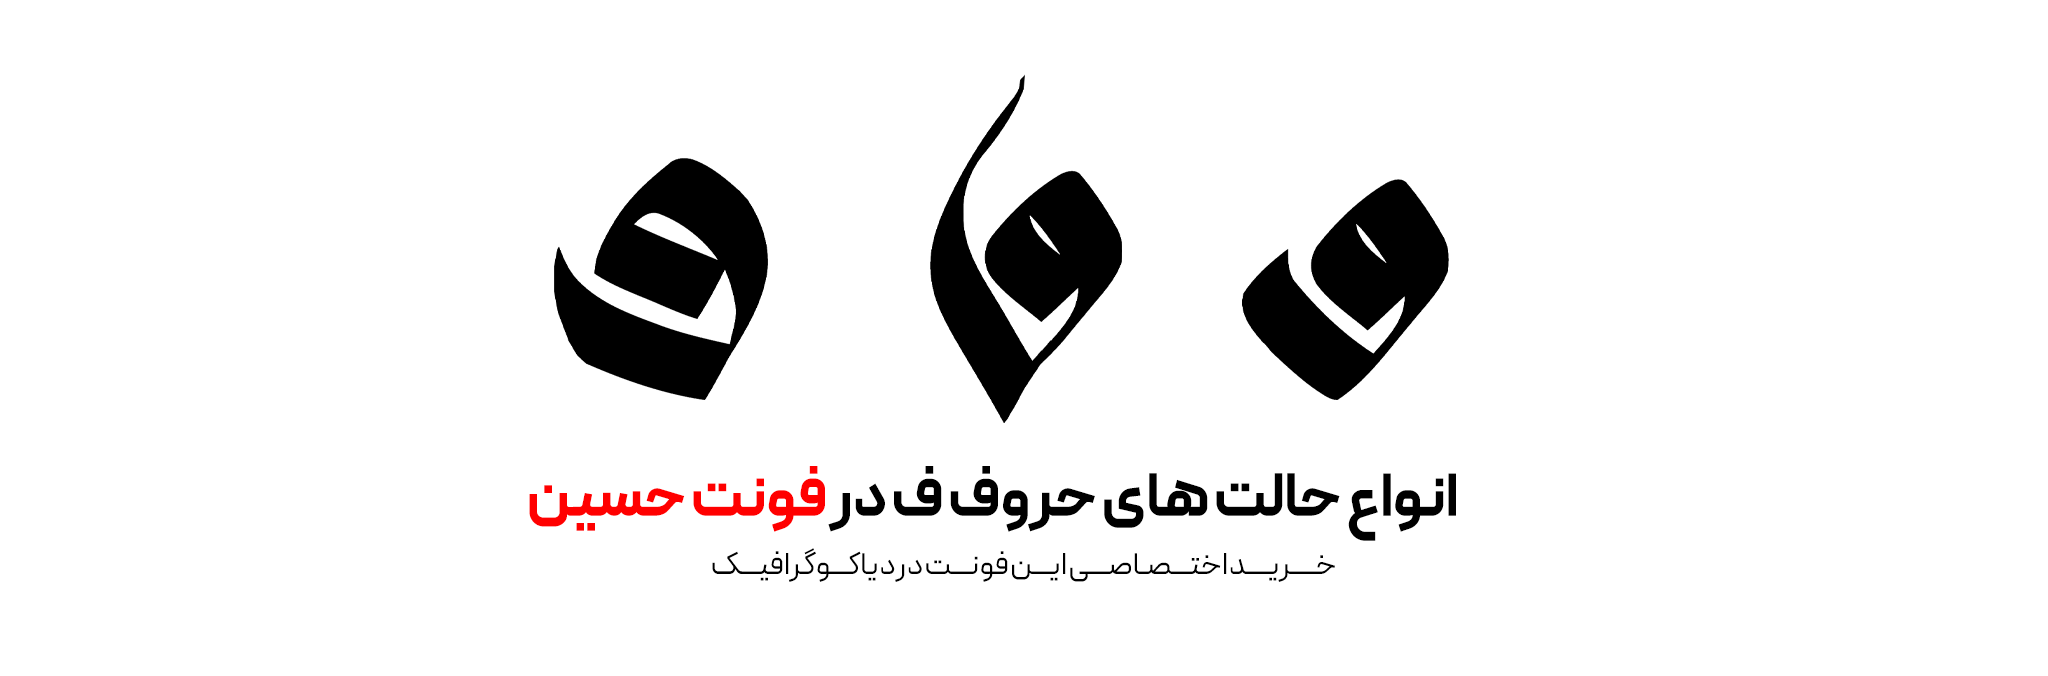 دانلود فونت تایپوگرافی حسین